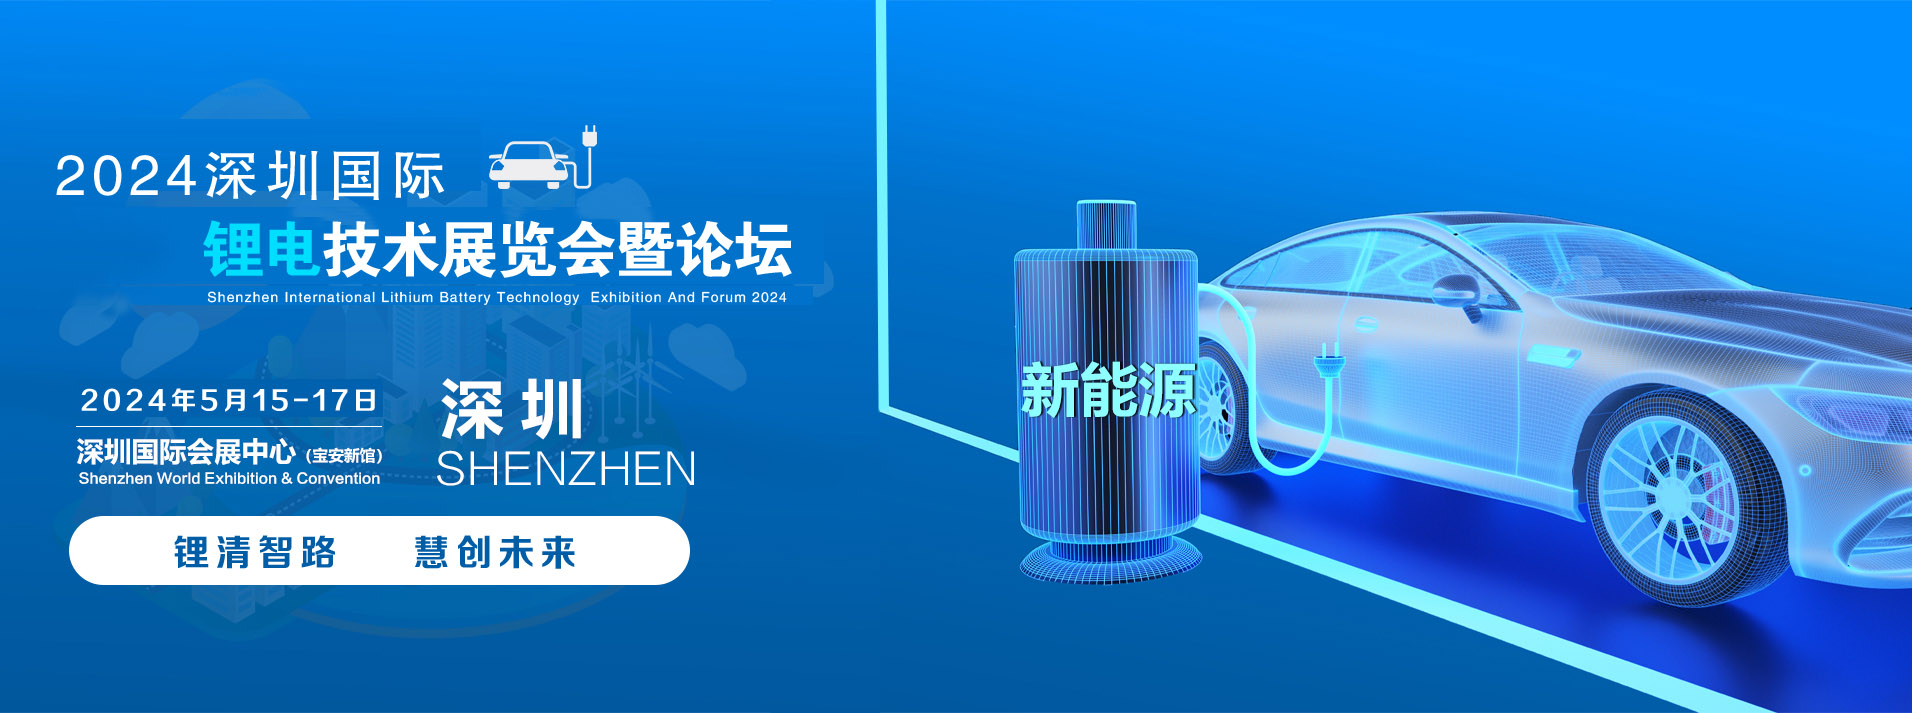 2024深圳国际锂电池技术展览-深圳展览展台设计搭建(图1)